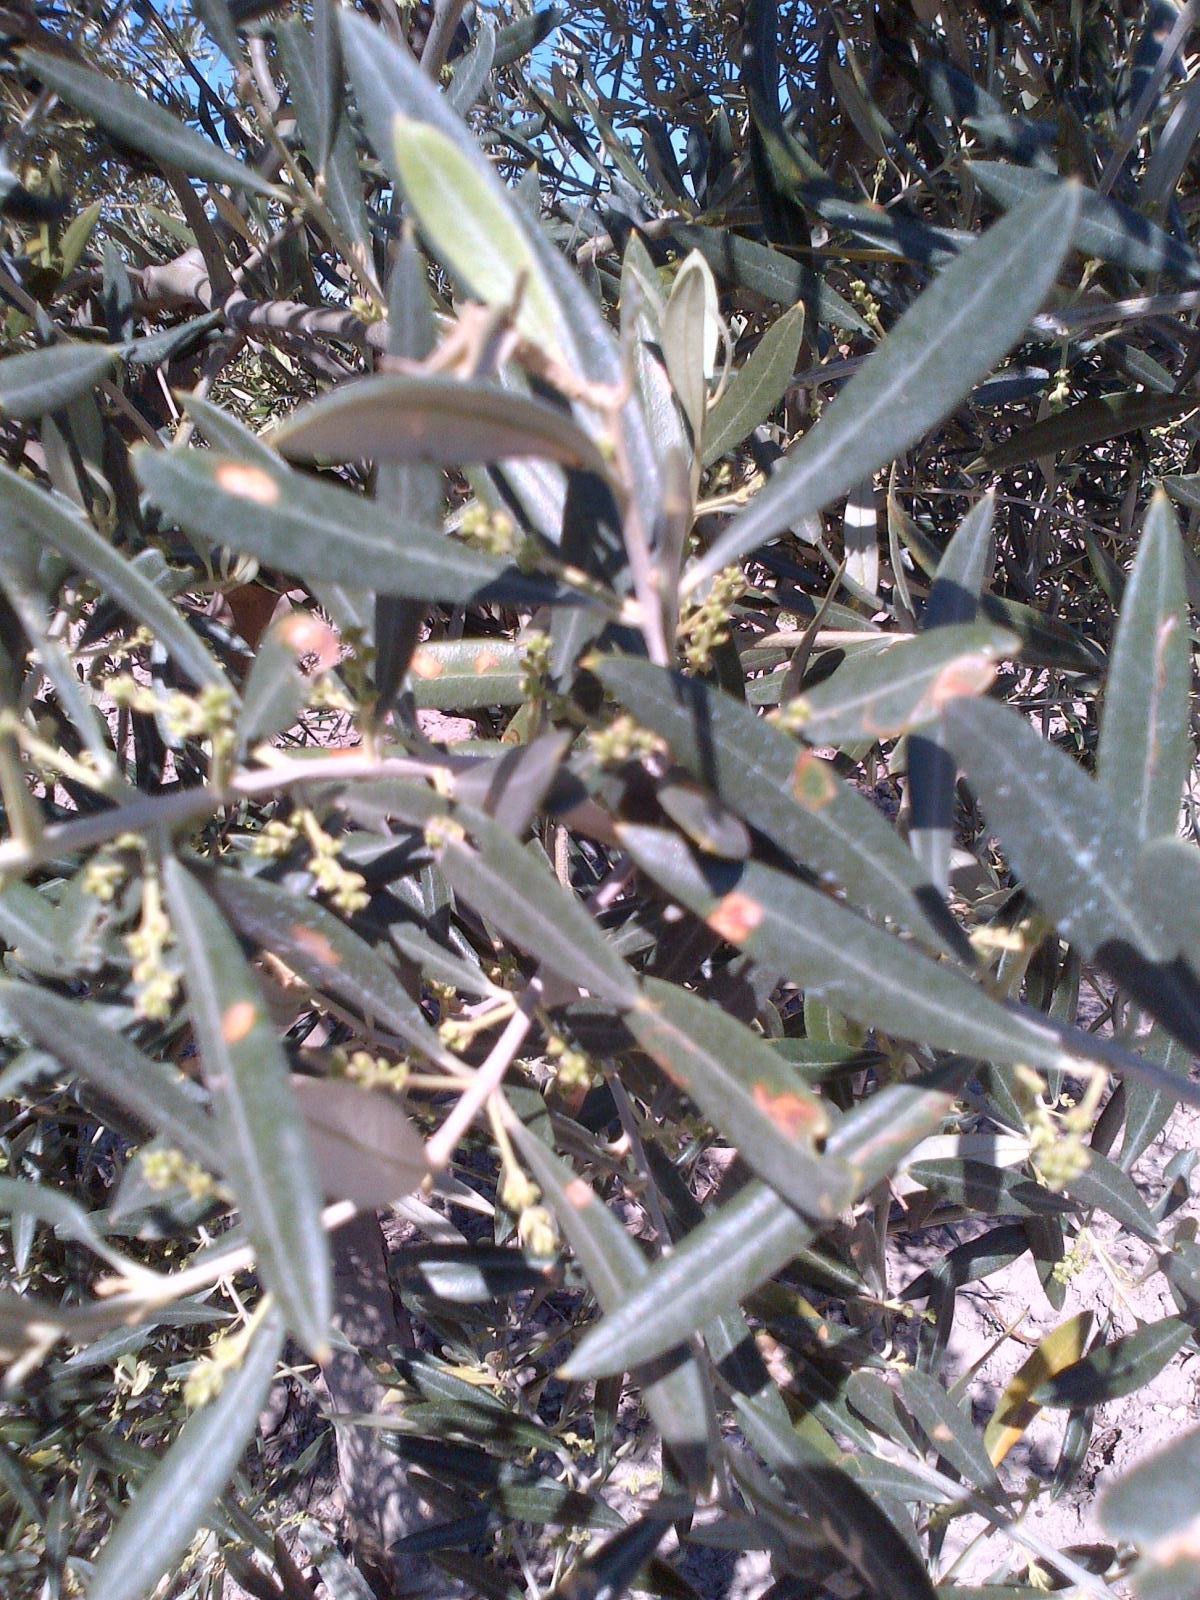 Polilla del olivo (Prays) Jkhle8